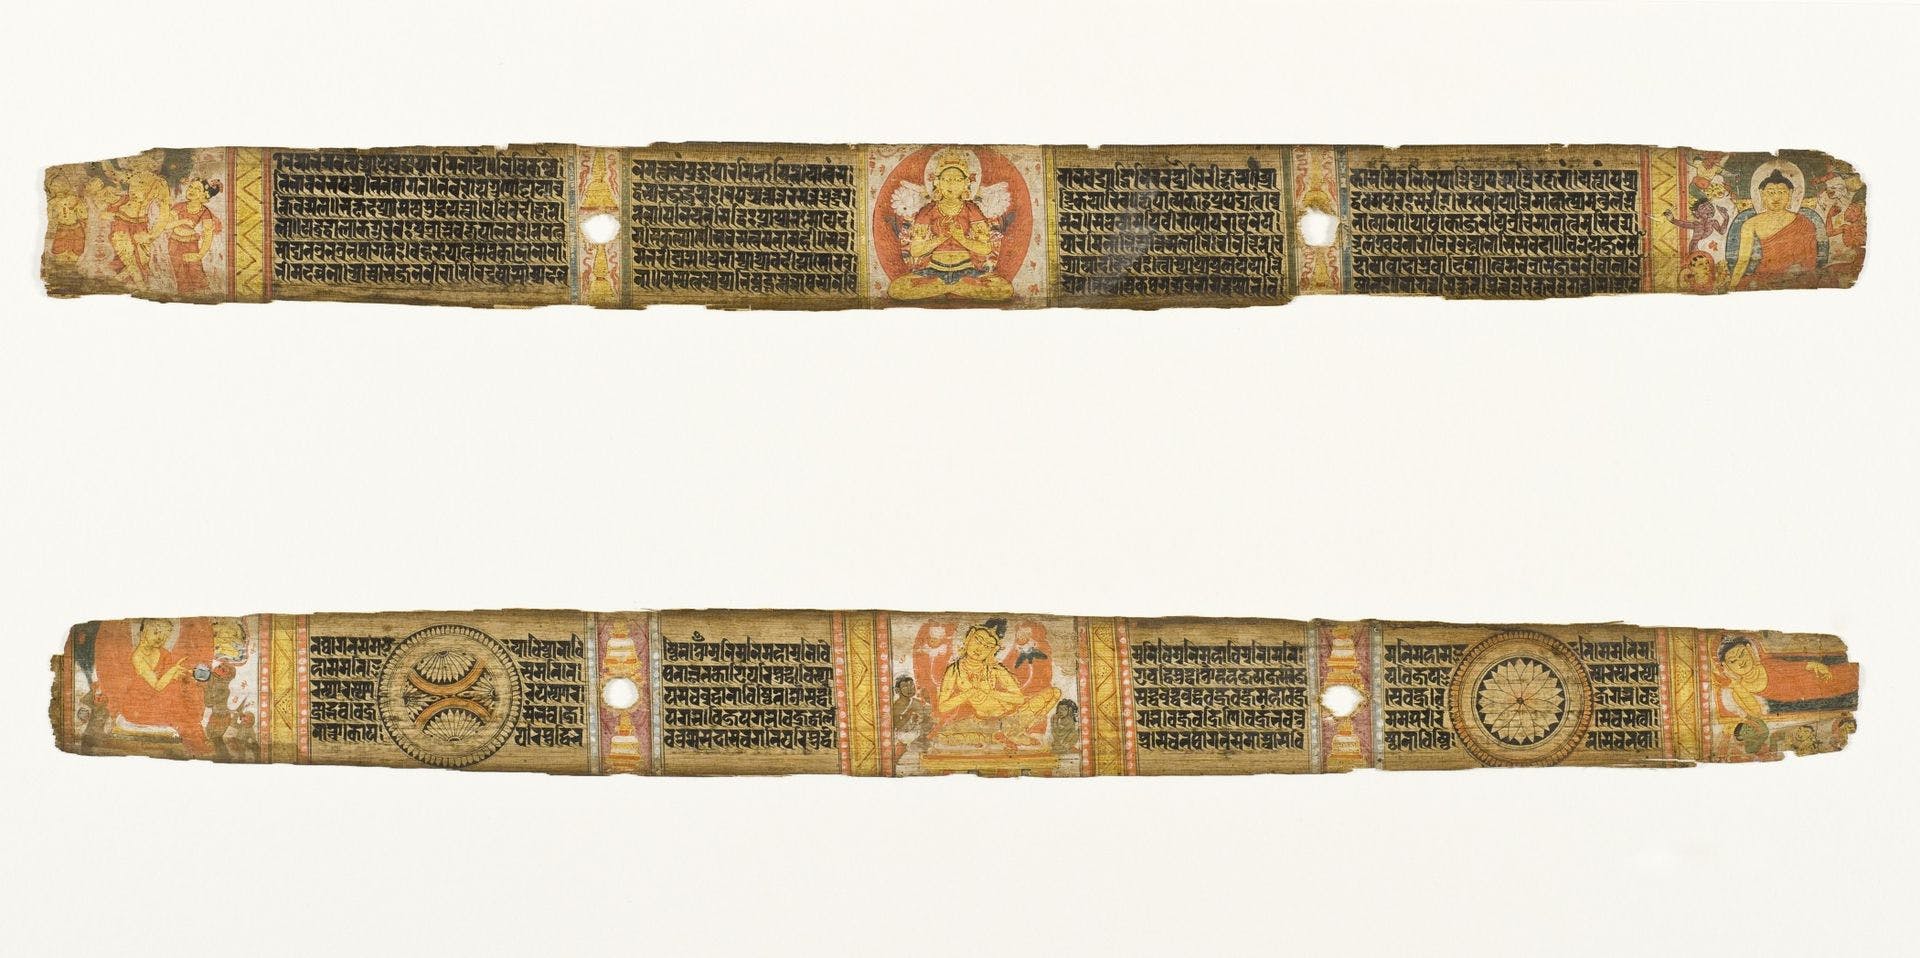 Manuscript from Nalanda, circa 1075